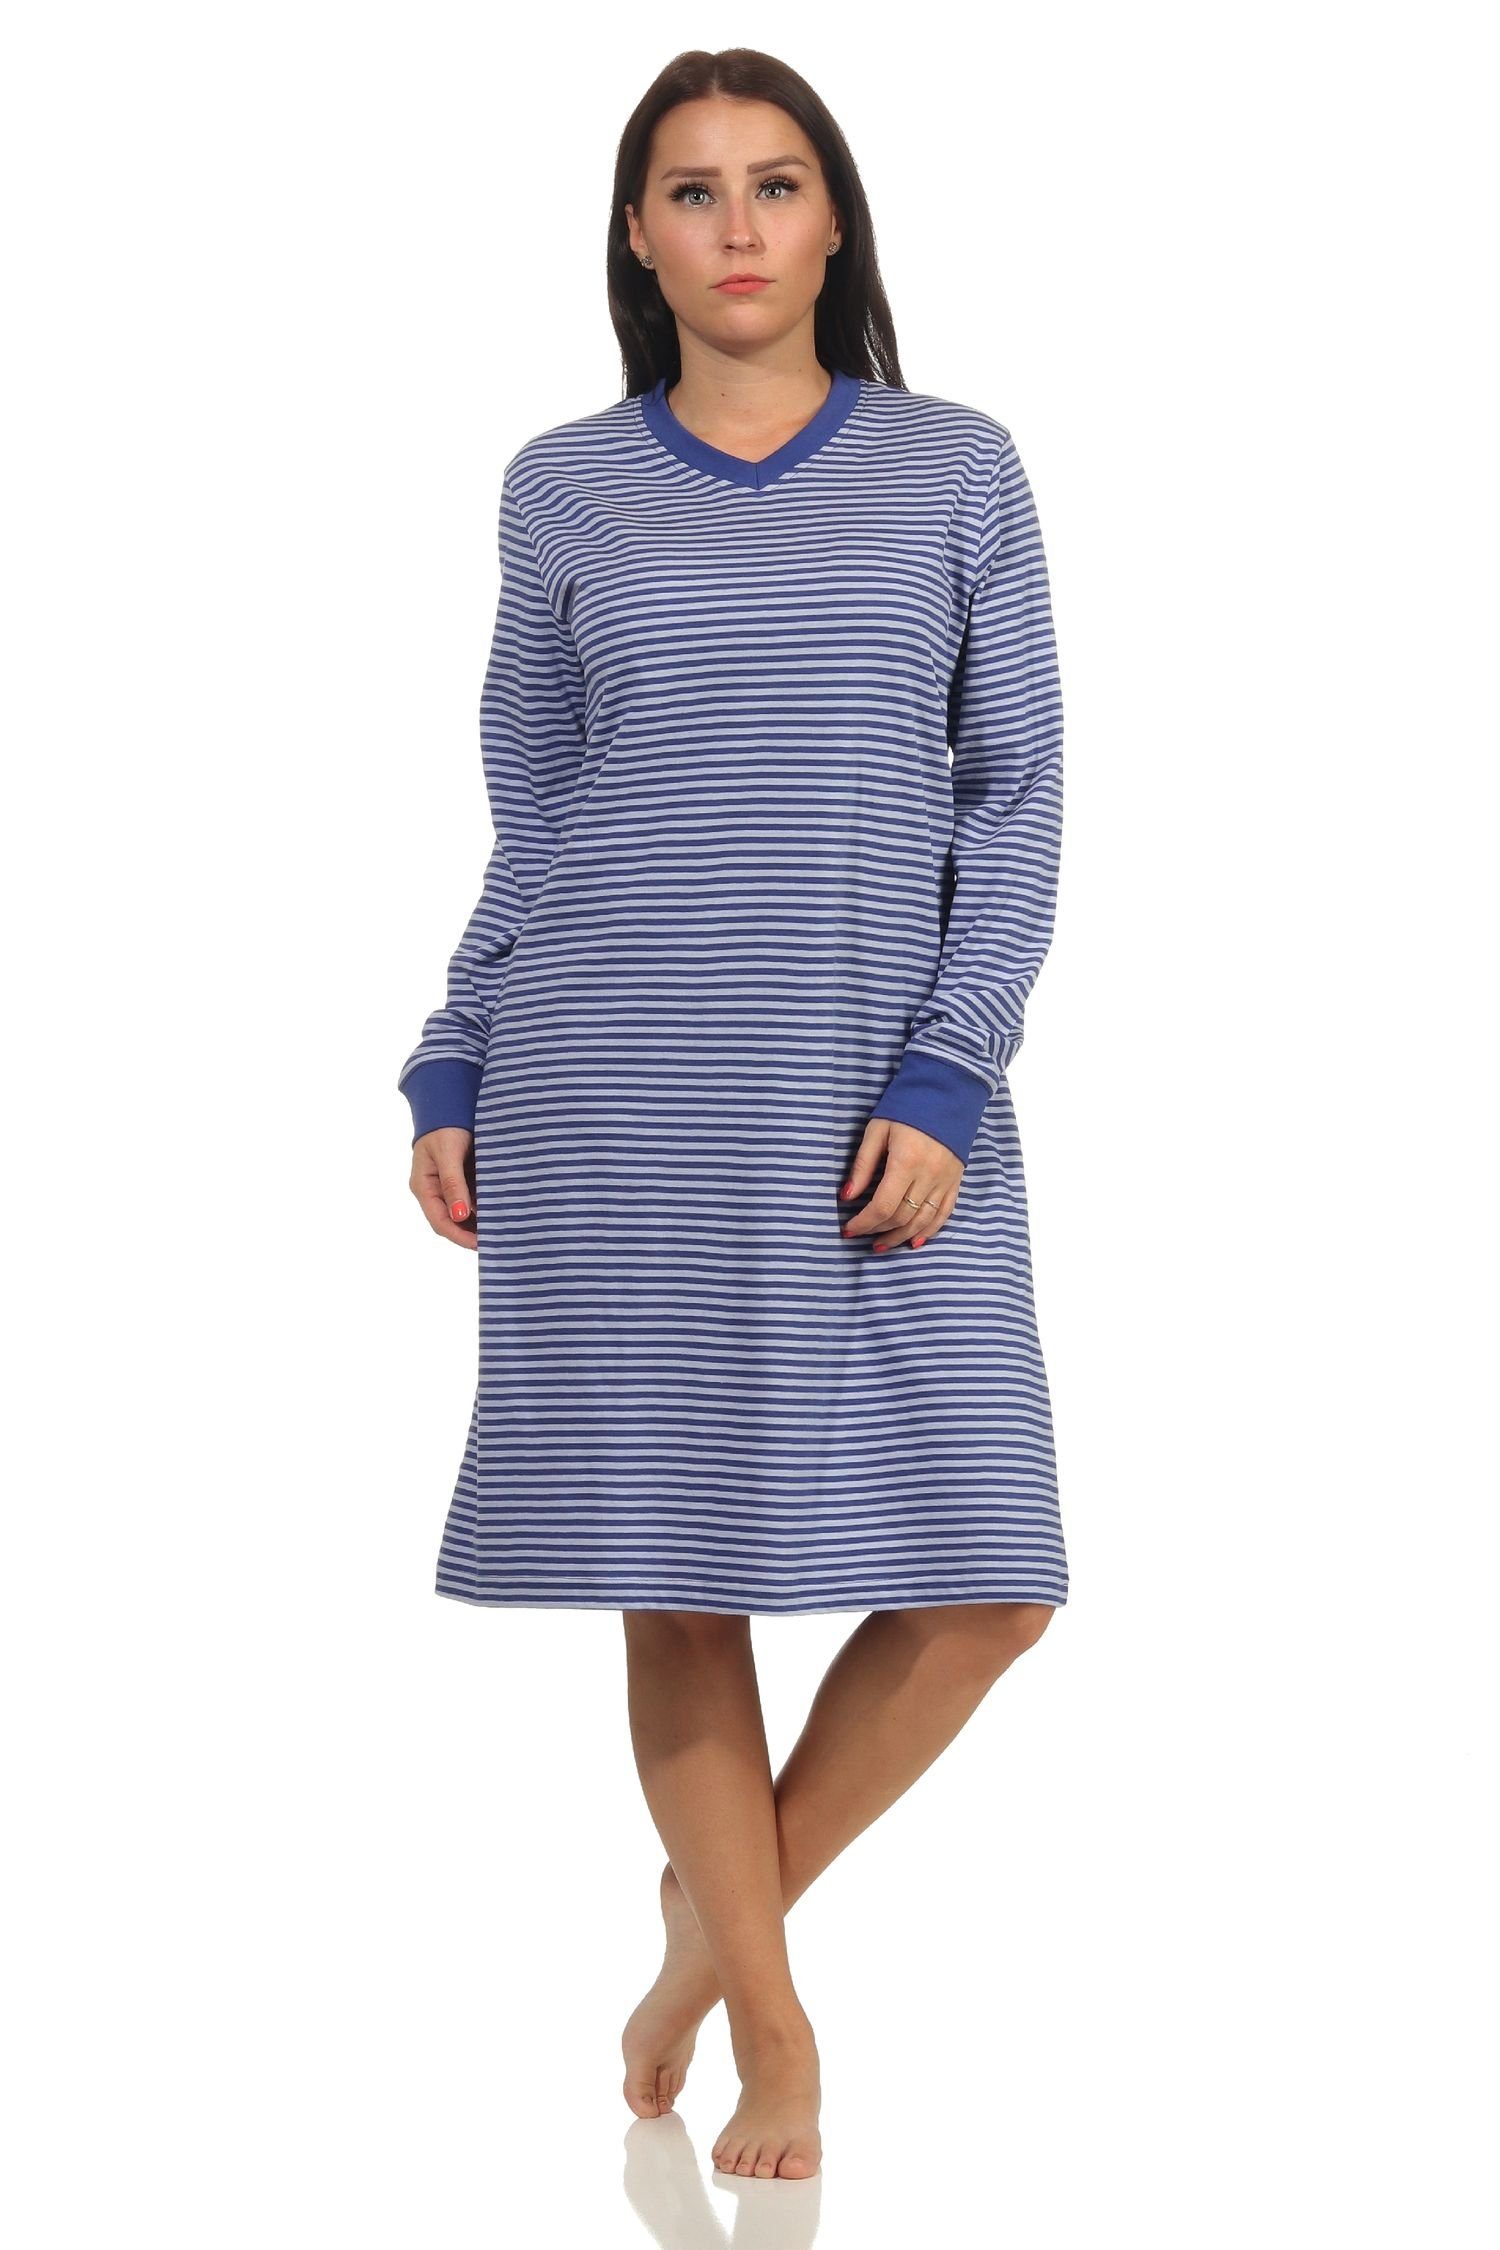 Normann Nachthemd Edles Damen Nachthemd langarm mit Bündchen in Streifenoptik - 212 302 blau